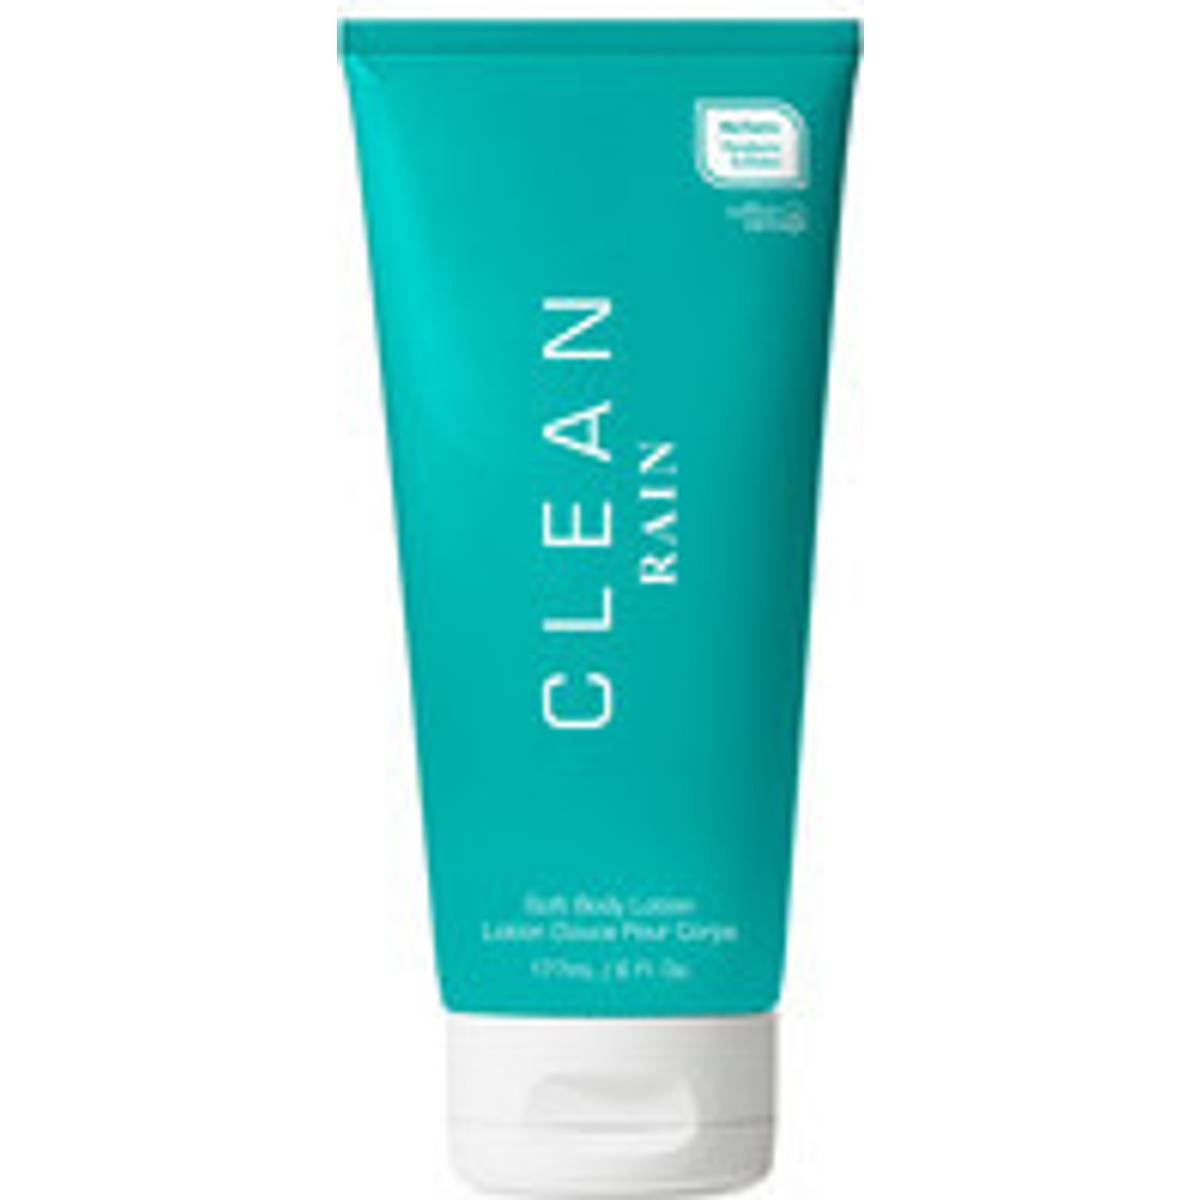 Clean Body lotion (9 produkter) hos PriceRunner • Se priser nu »